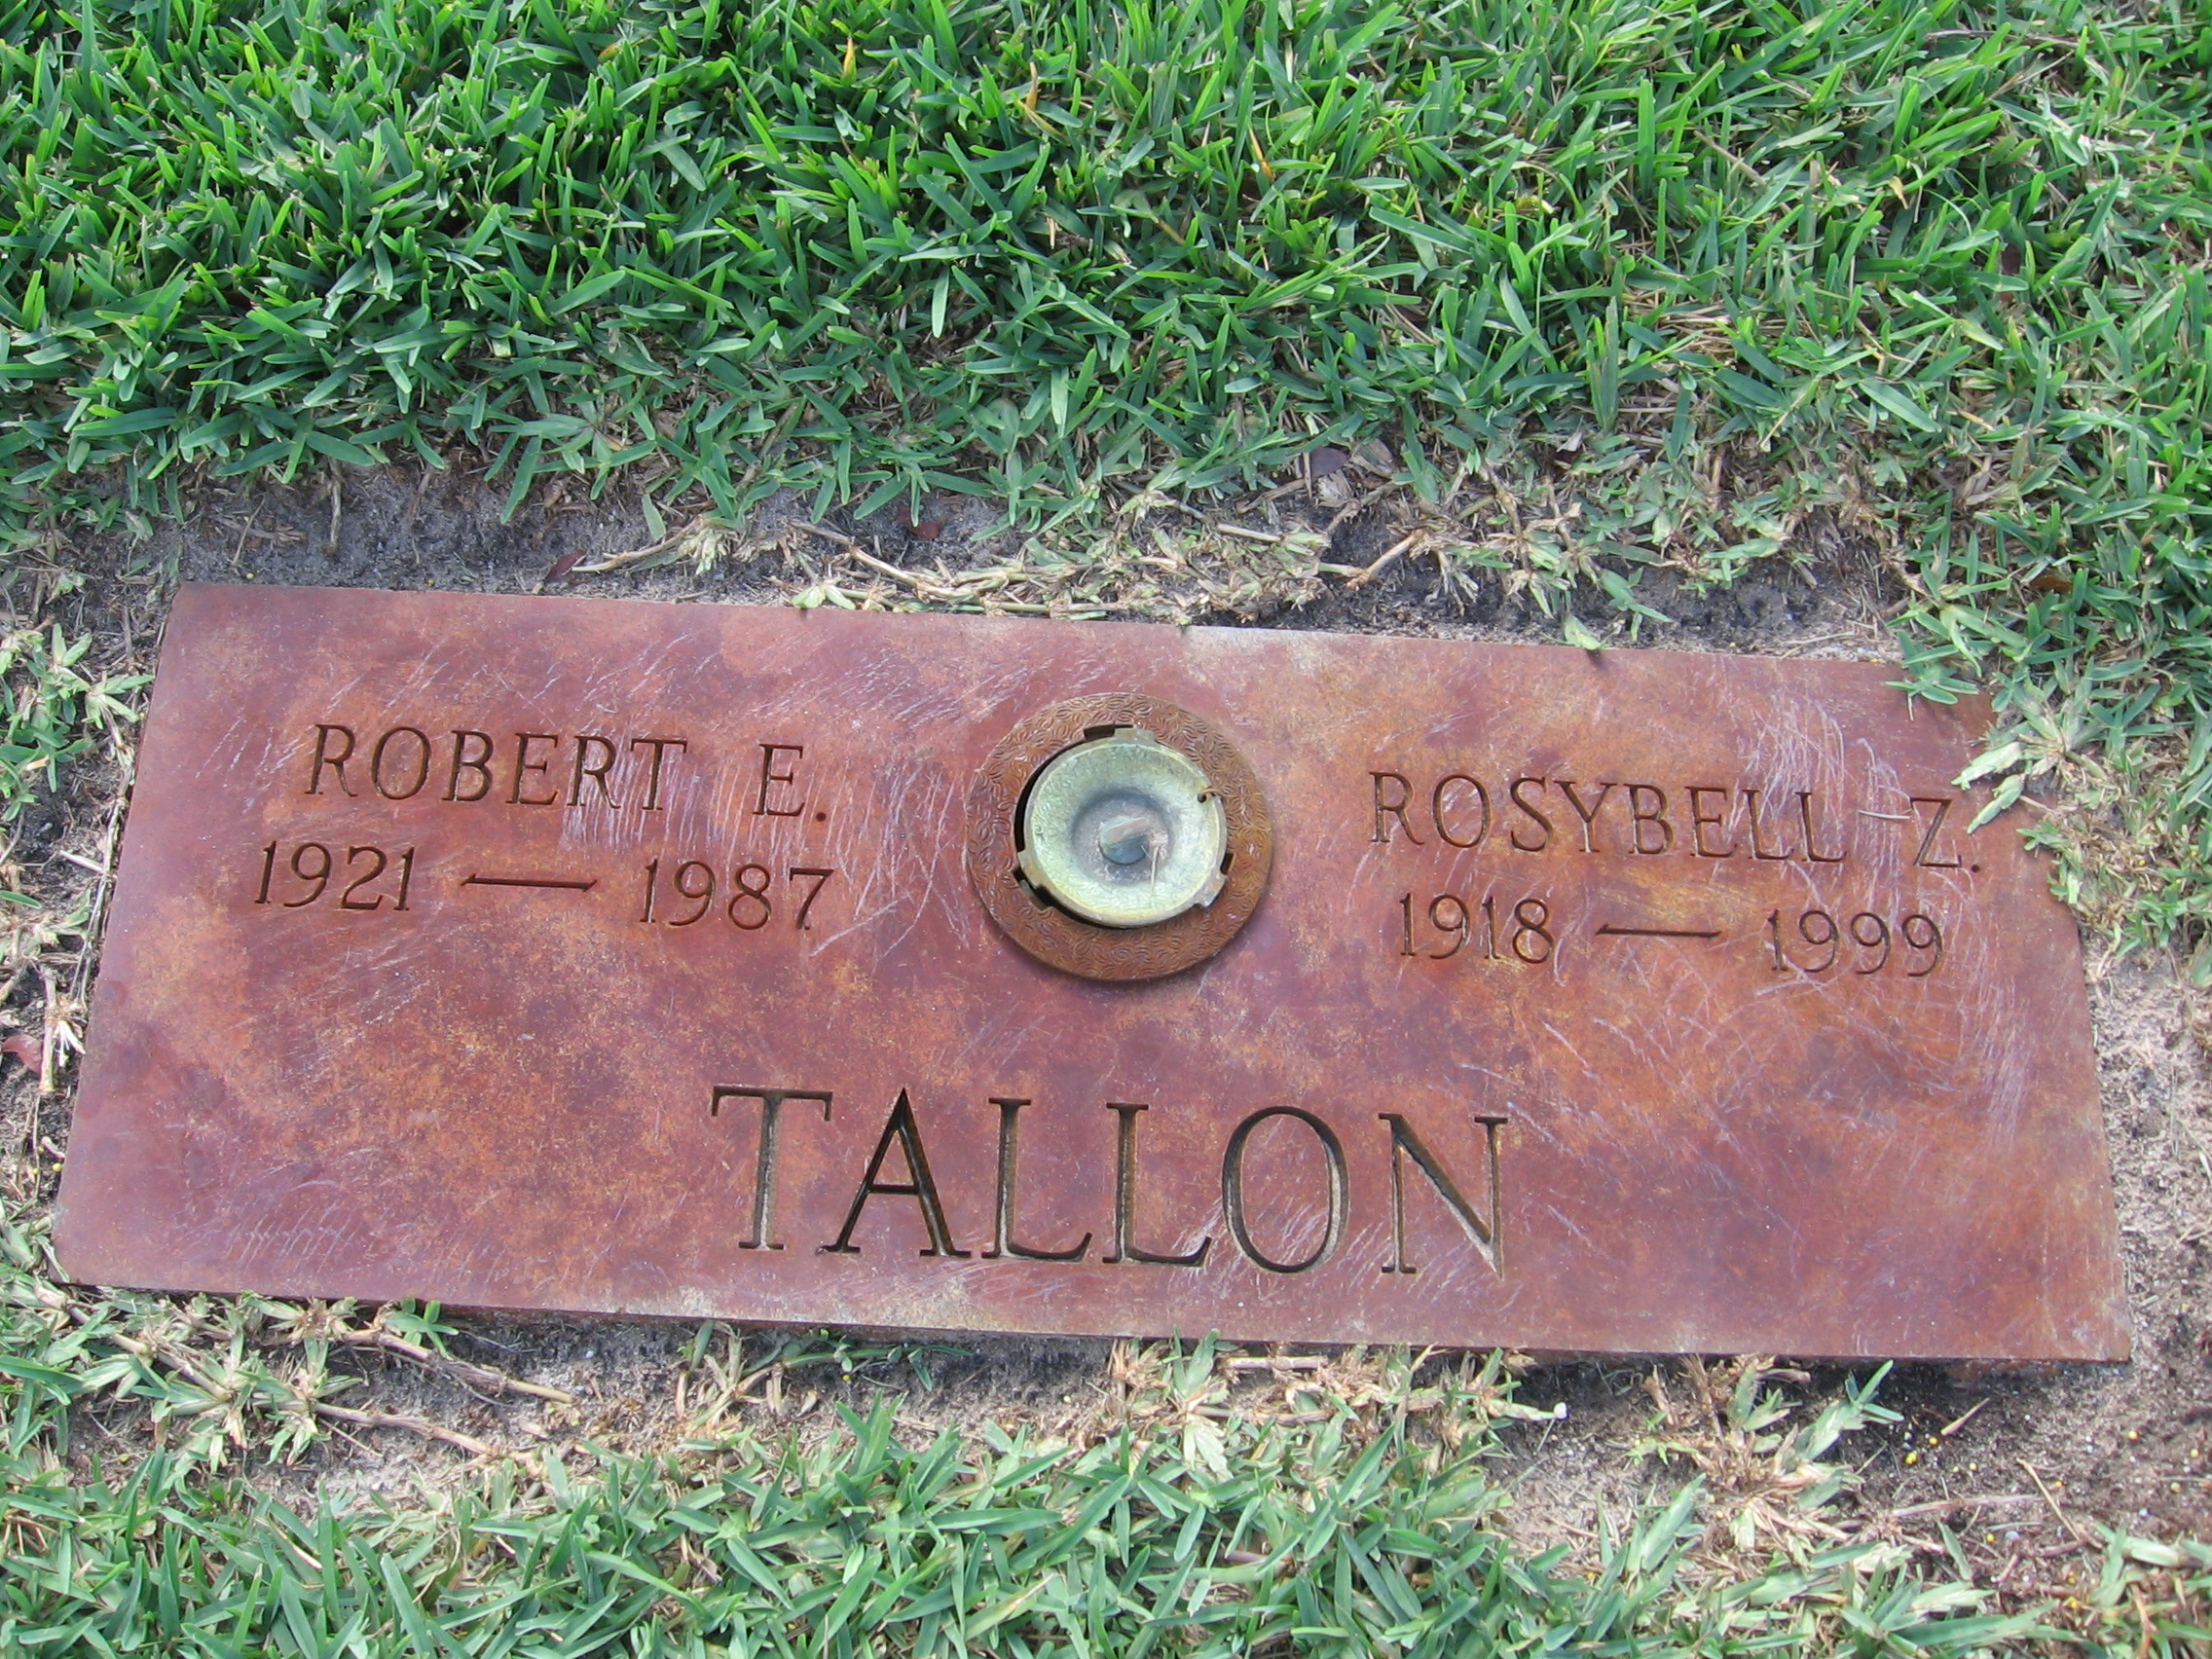 Robert E Tallon